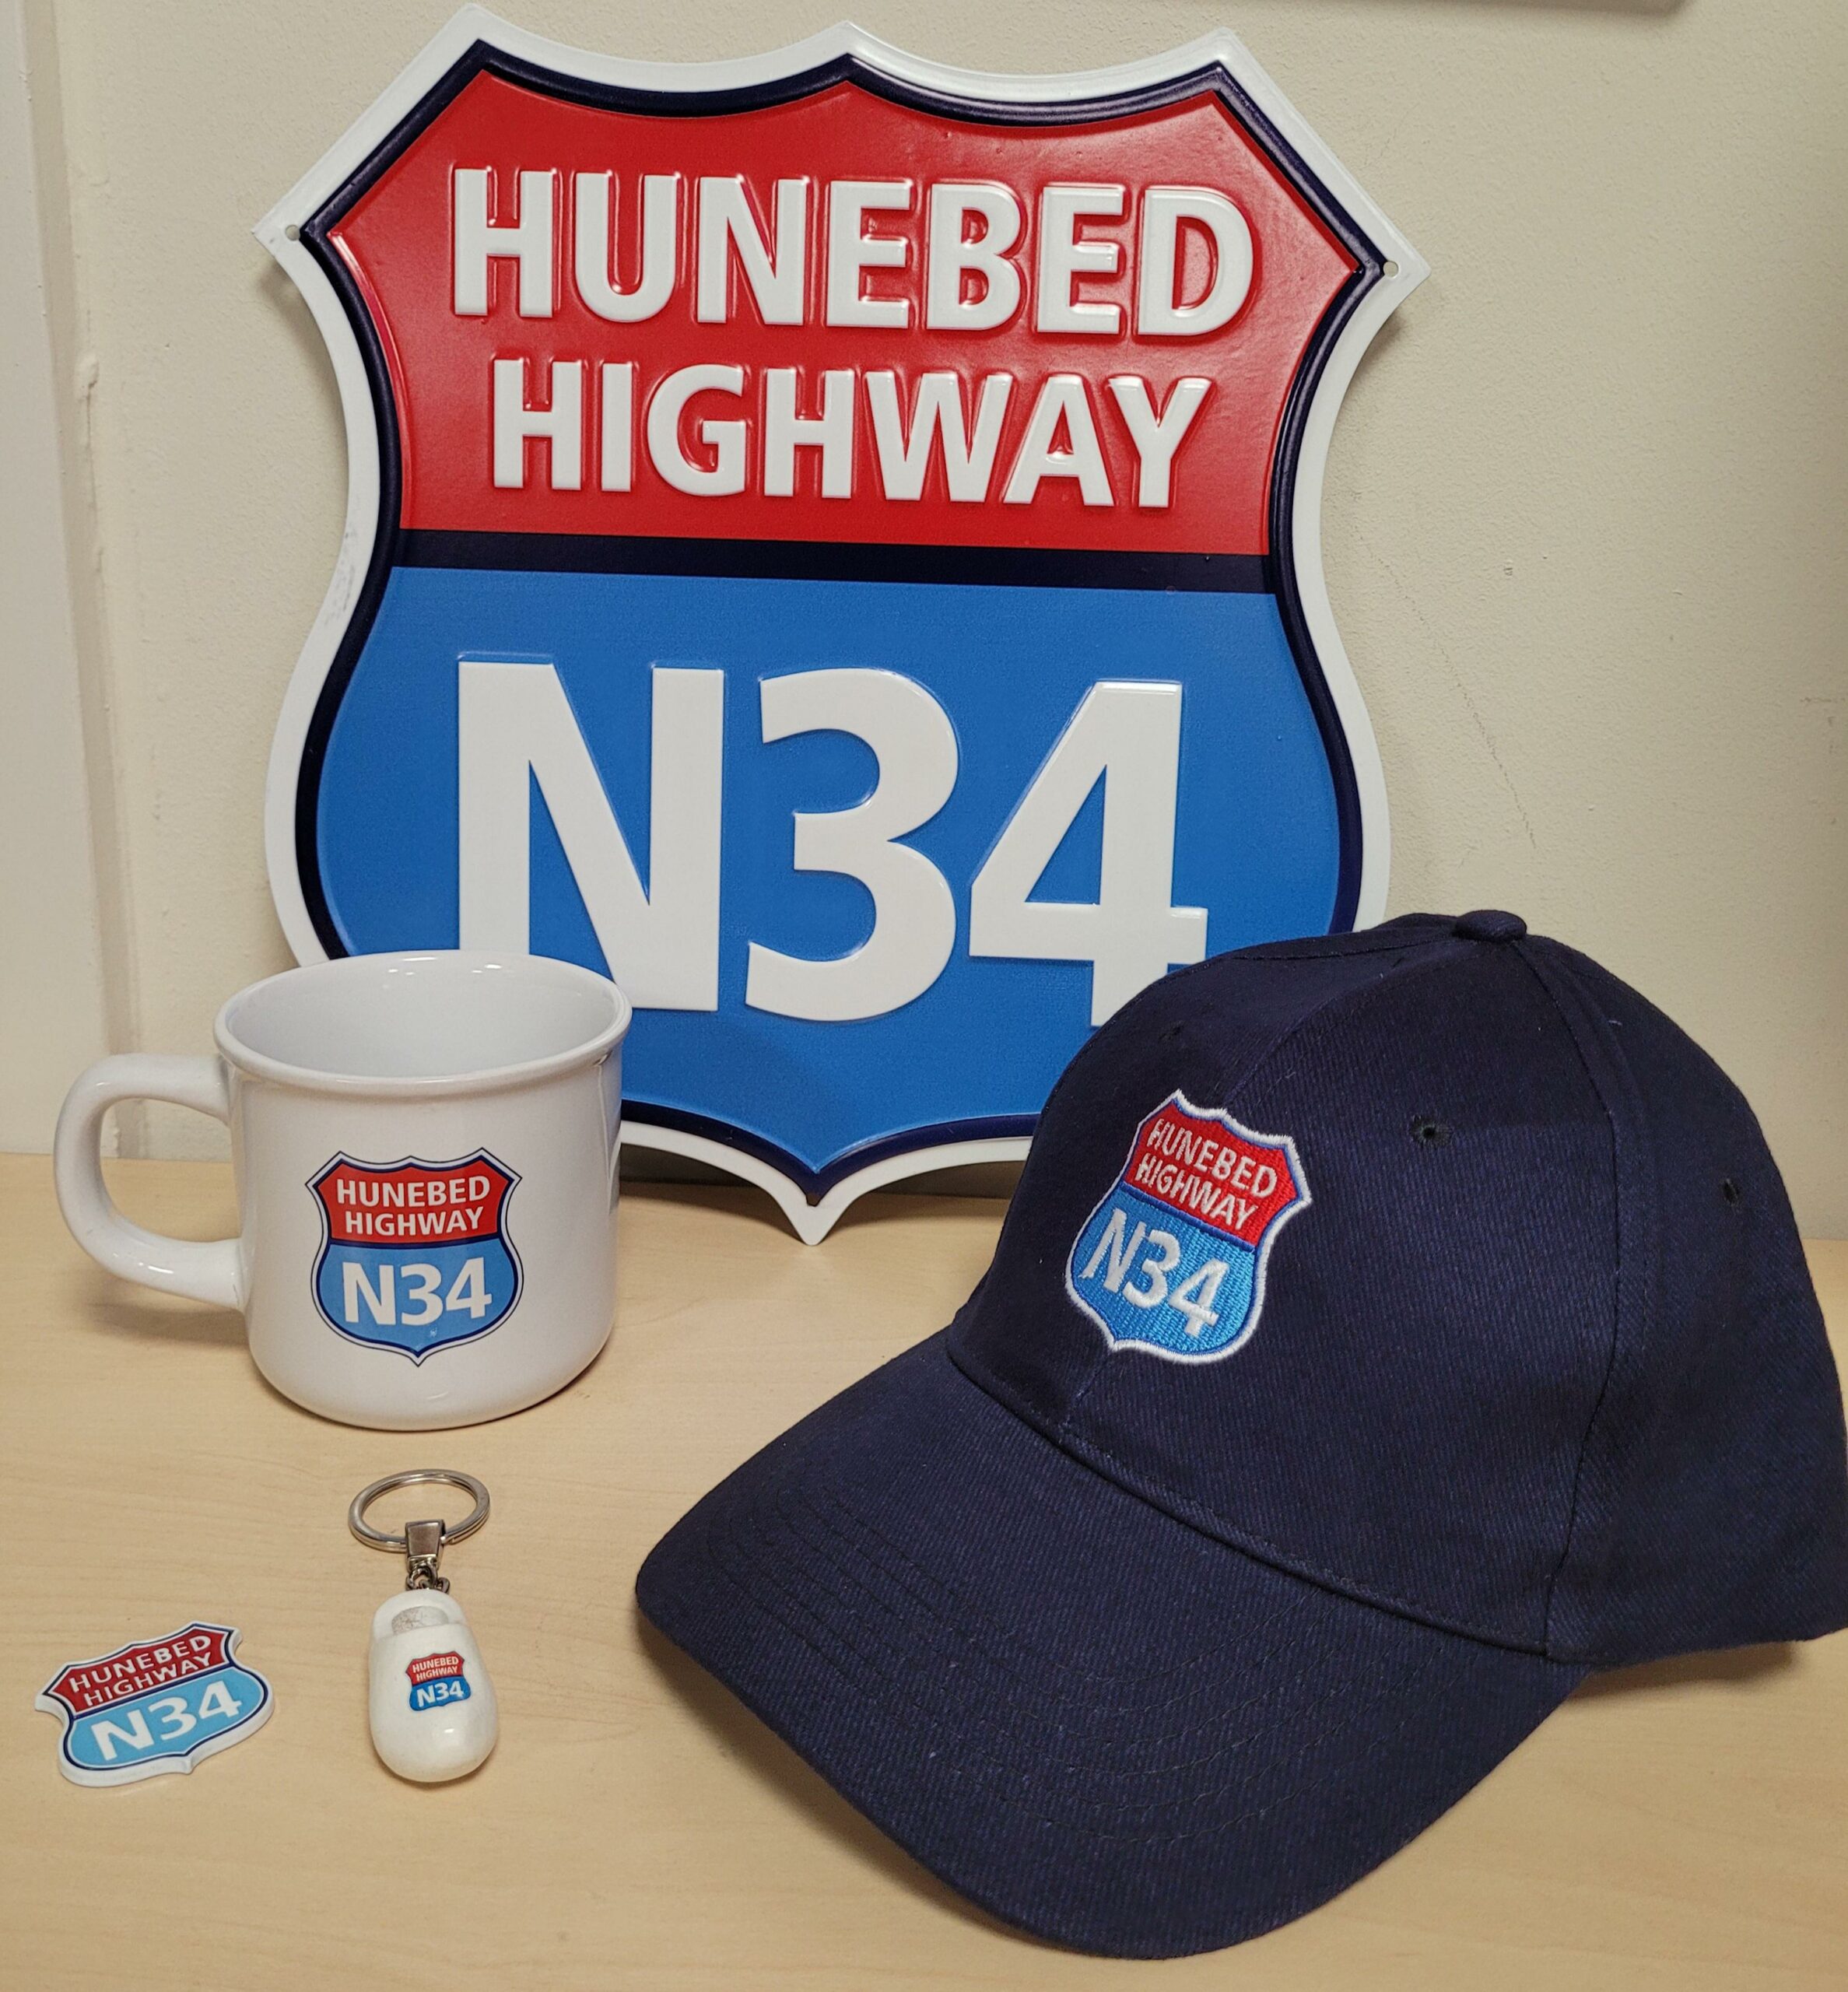 N34 Hunebed highway wandbord